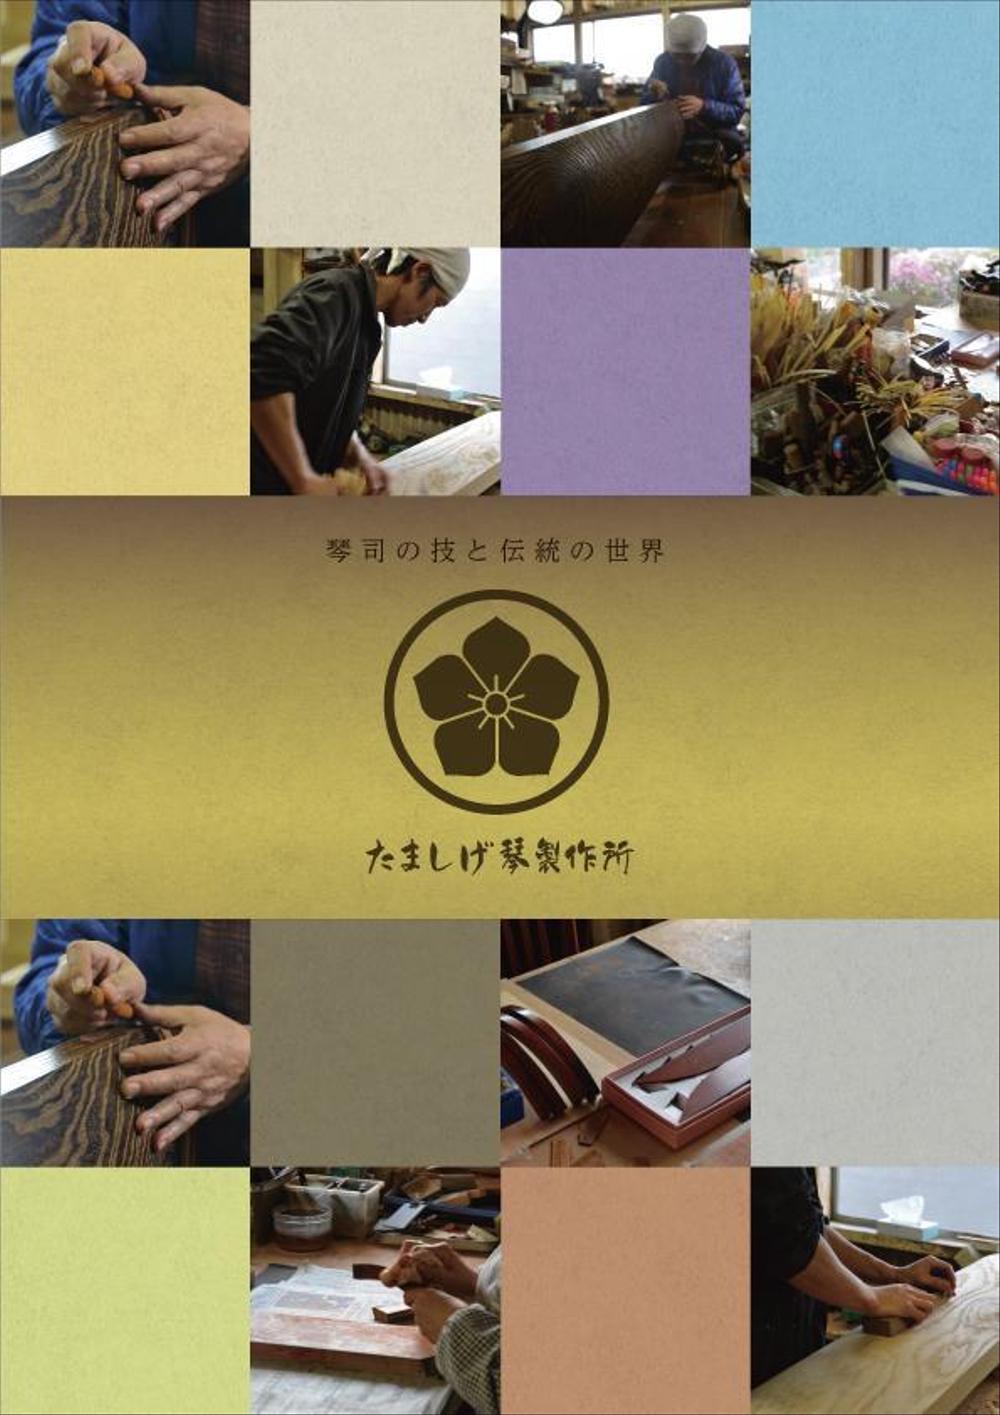 日本伝統工芸「琴」製作所の商品チラシ